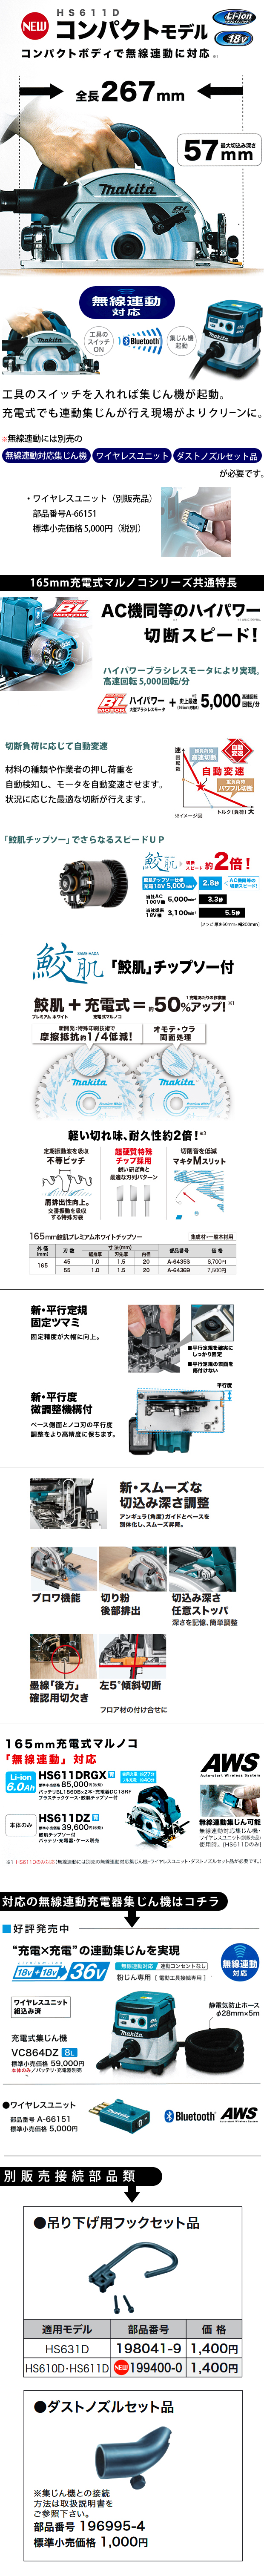 マキタ 165mm 充電式マルノコ HS611D【無線連動対応コンパクトモデル 